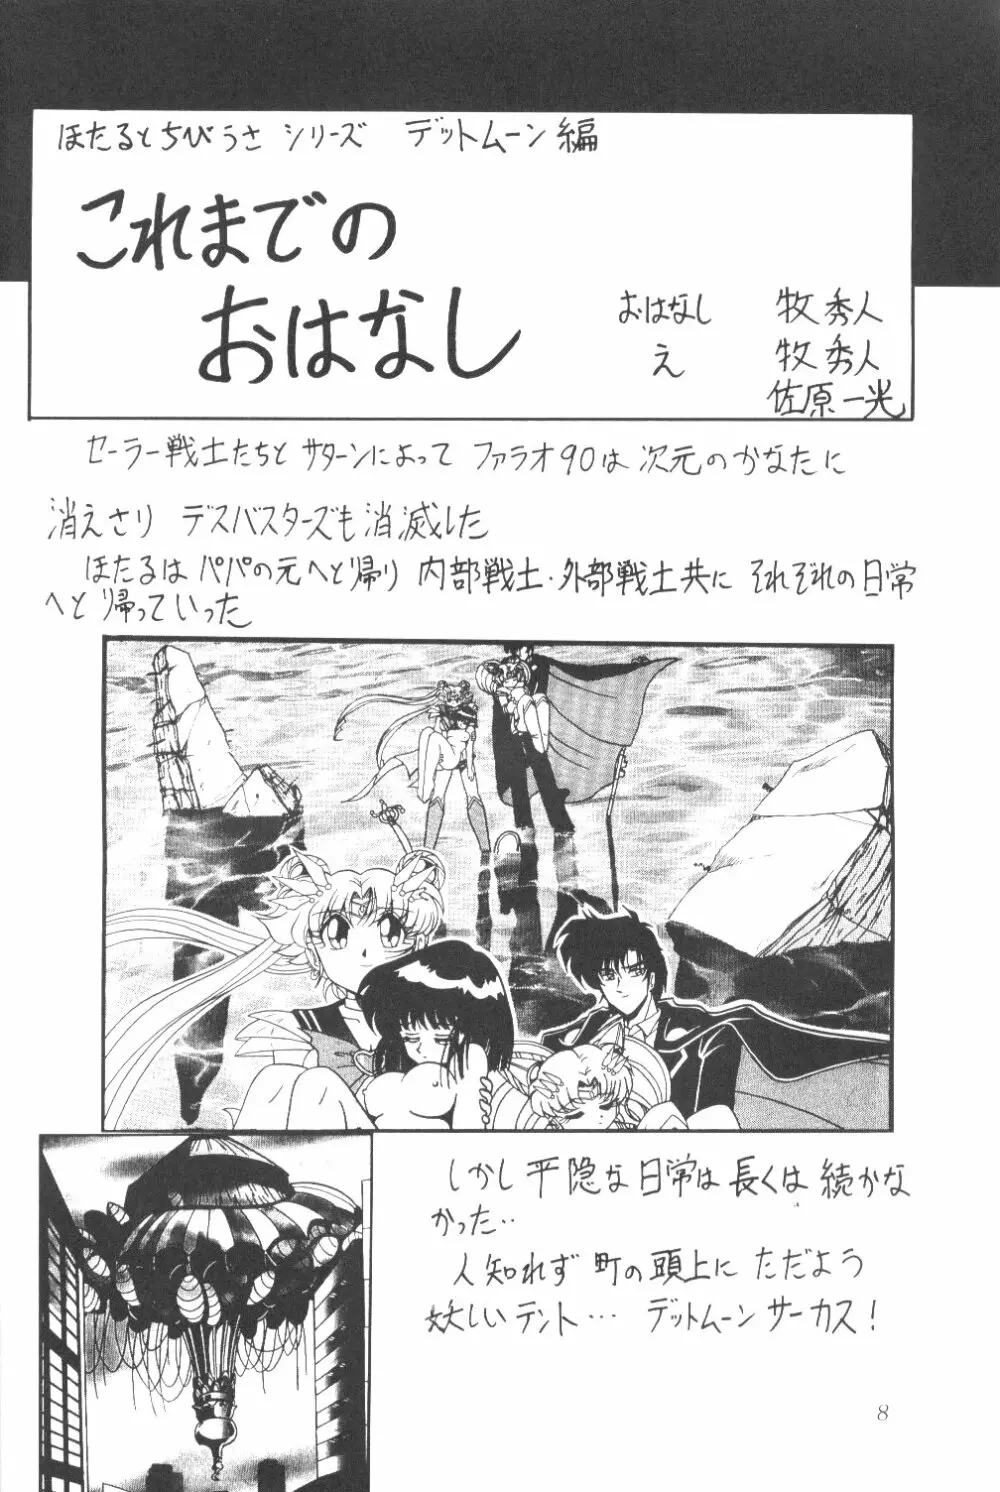 サイレント・サターン SS vol.3 7ページ